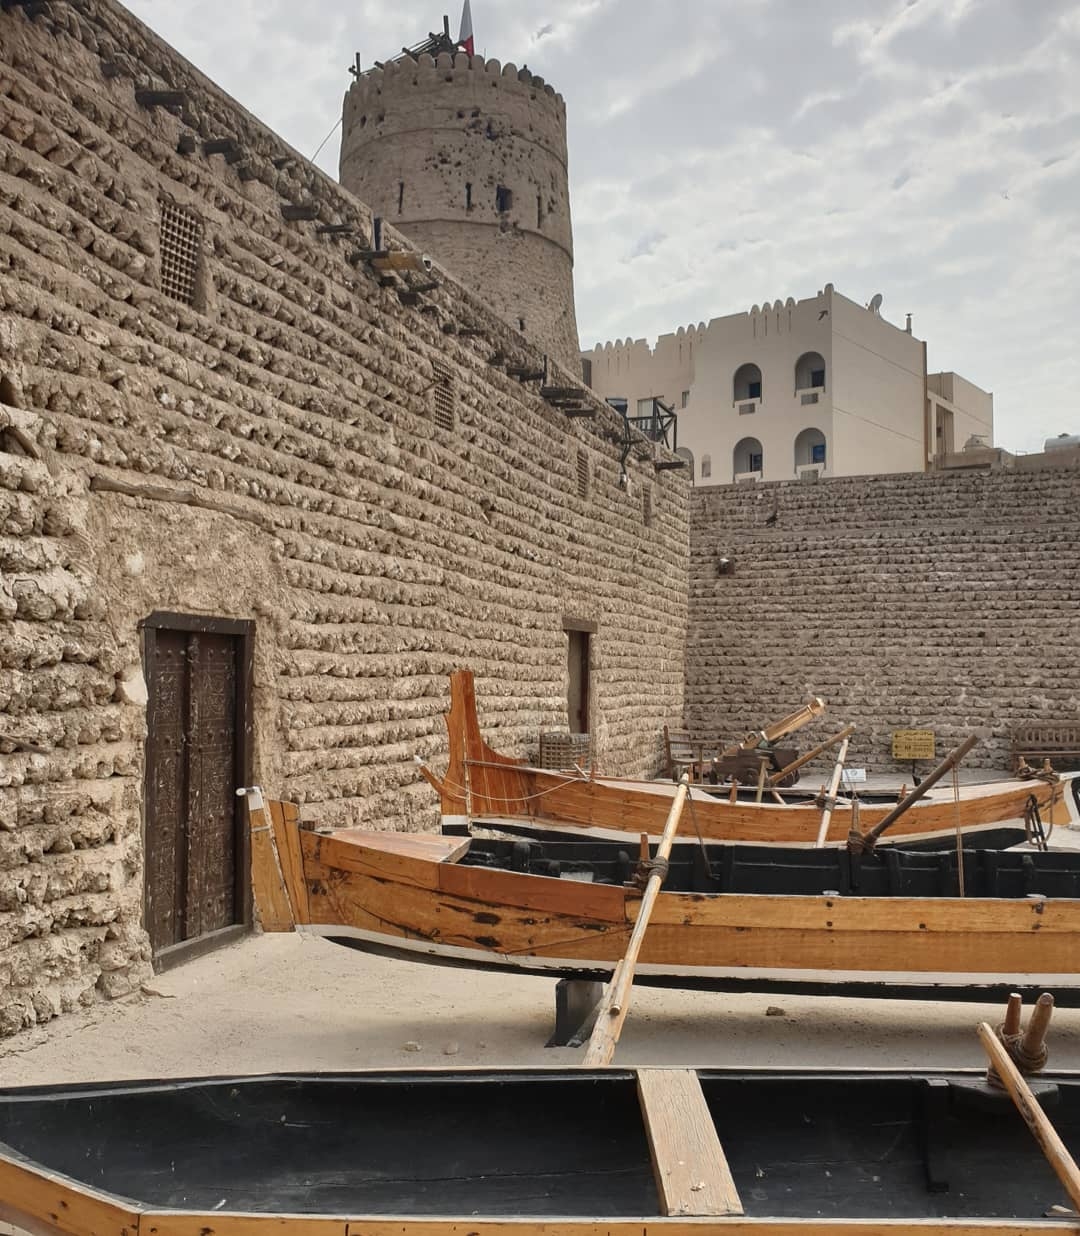 Во внутреннем дворике представлены лодки, на которых ловцы жемчуга отправлялись за добычей Дубай, ОАЭ